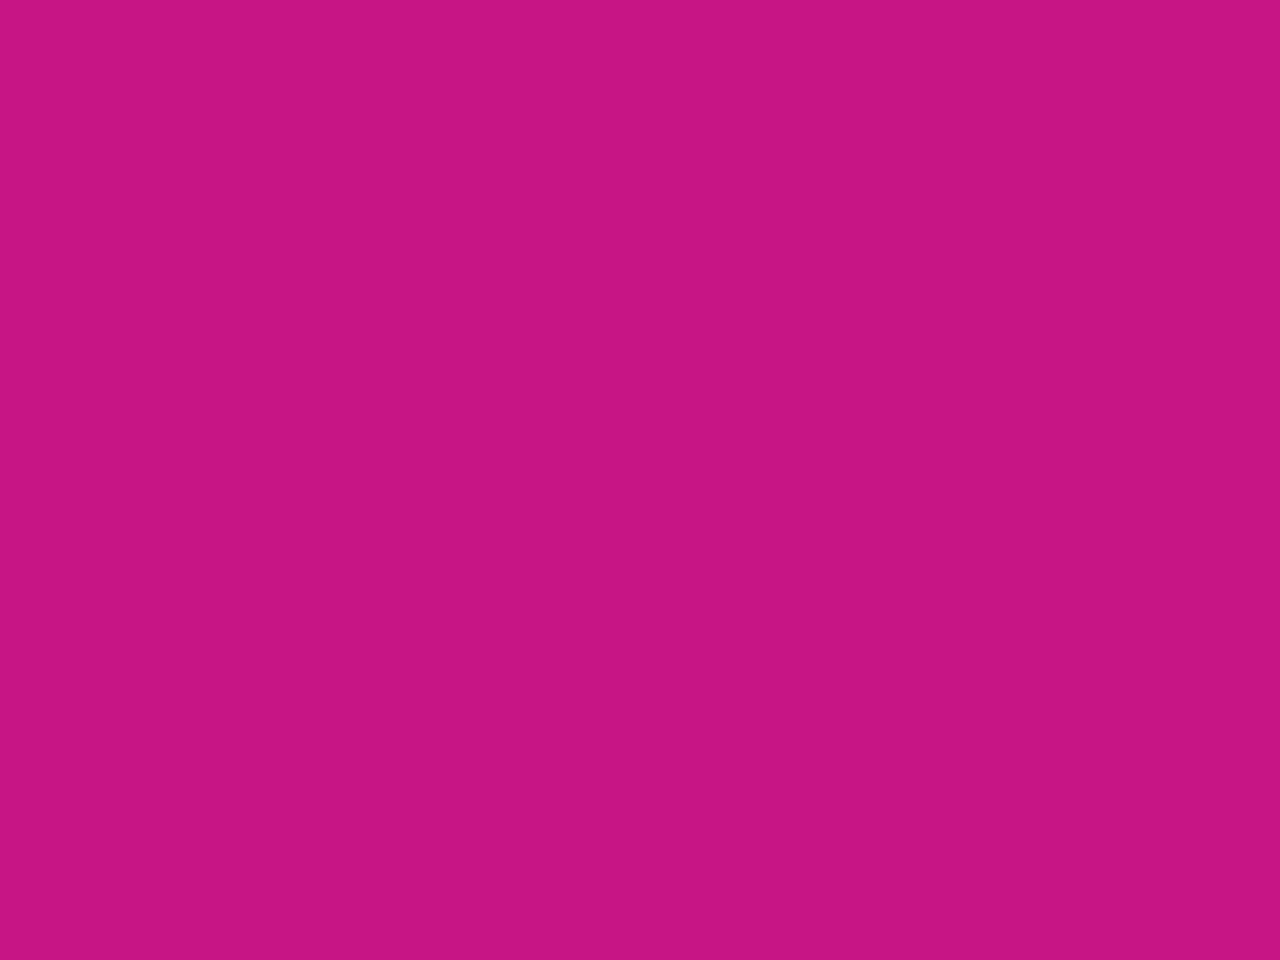 1280x960 Medium Violet-red Solid Color Background